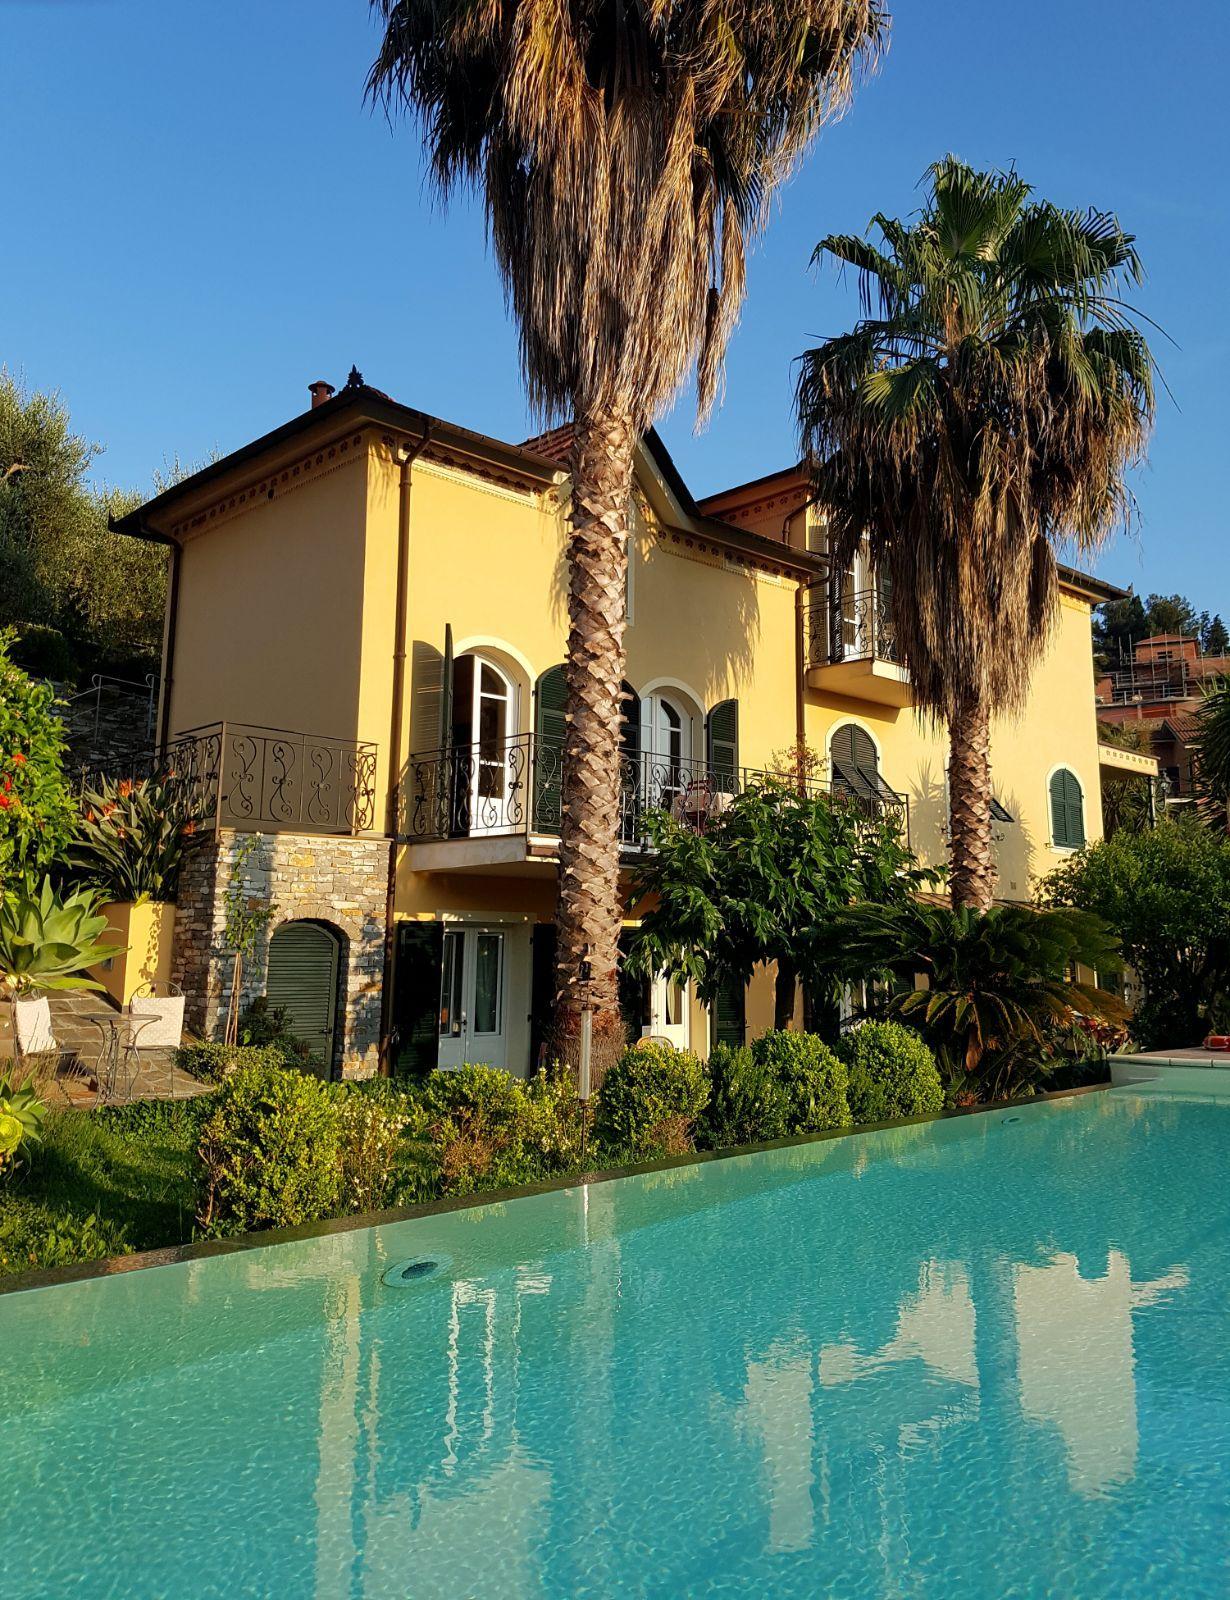 Ferienwohnung für 2 Personen ca. 45 m² i   Golf von Genua